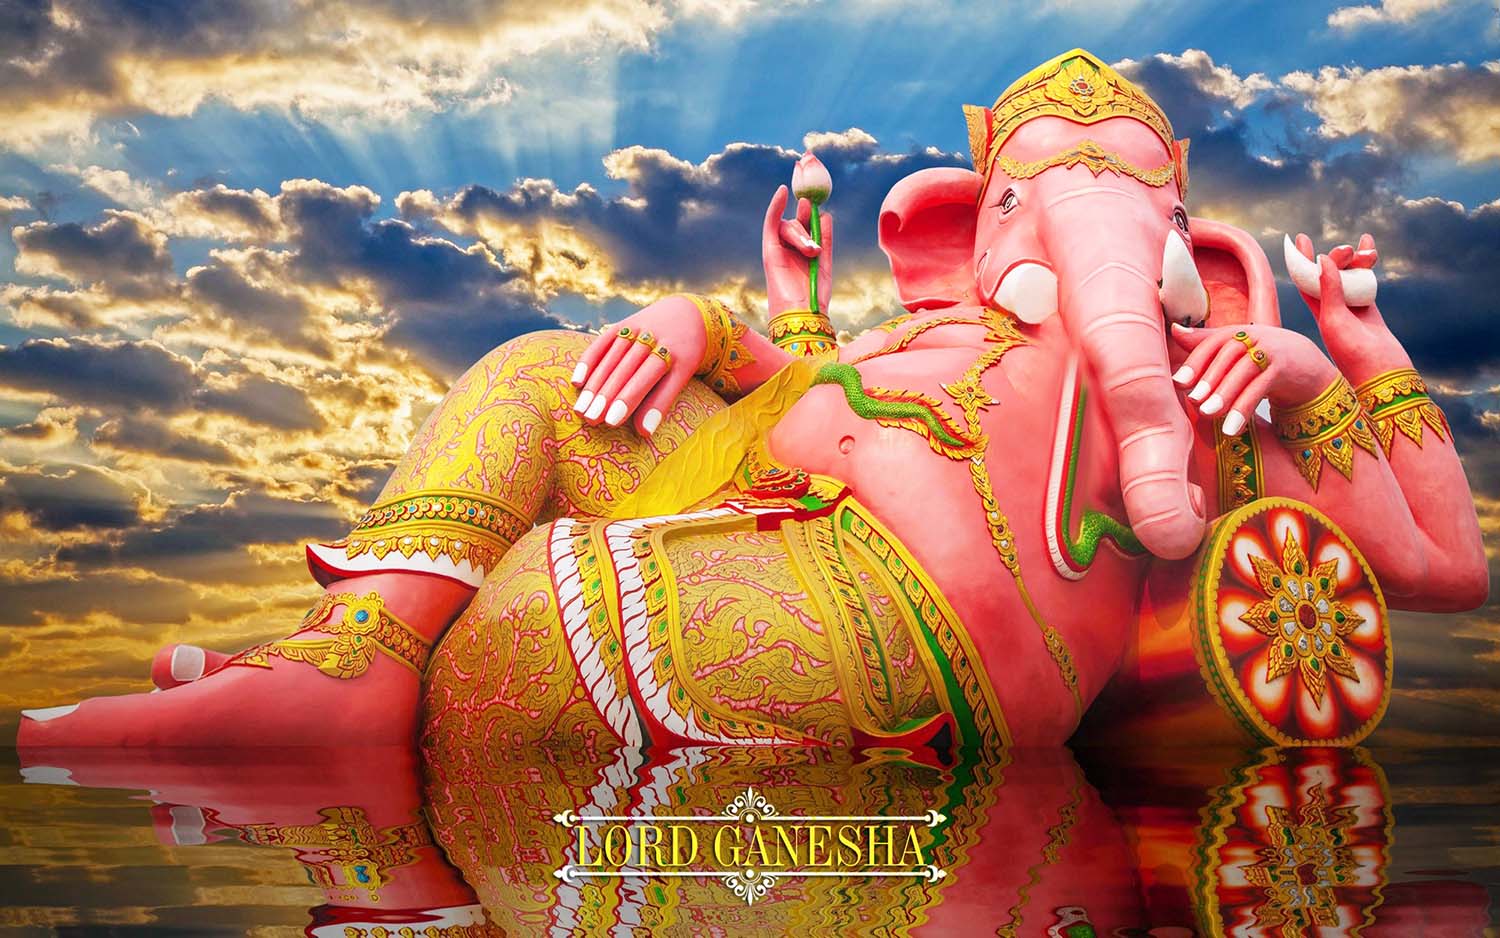 Giant God Vinayaka lying wallpaper!